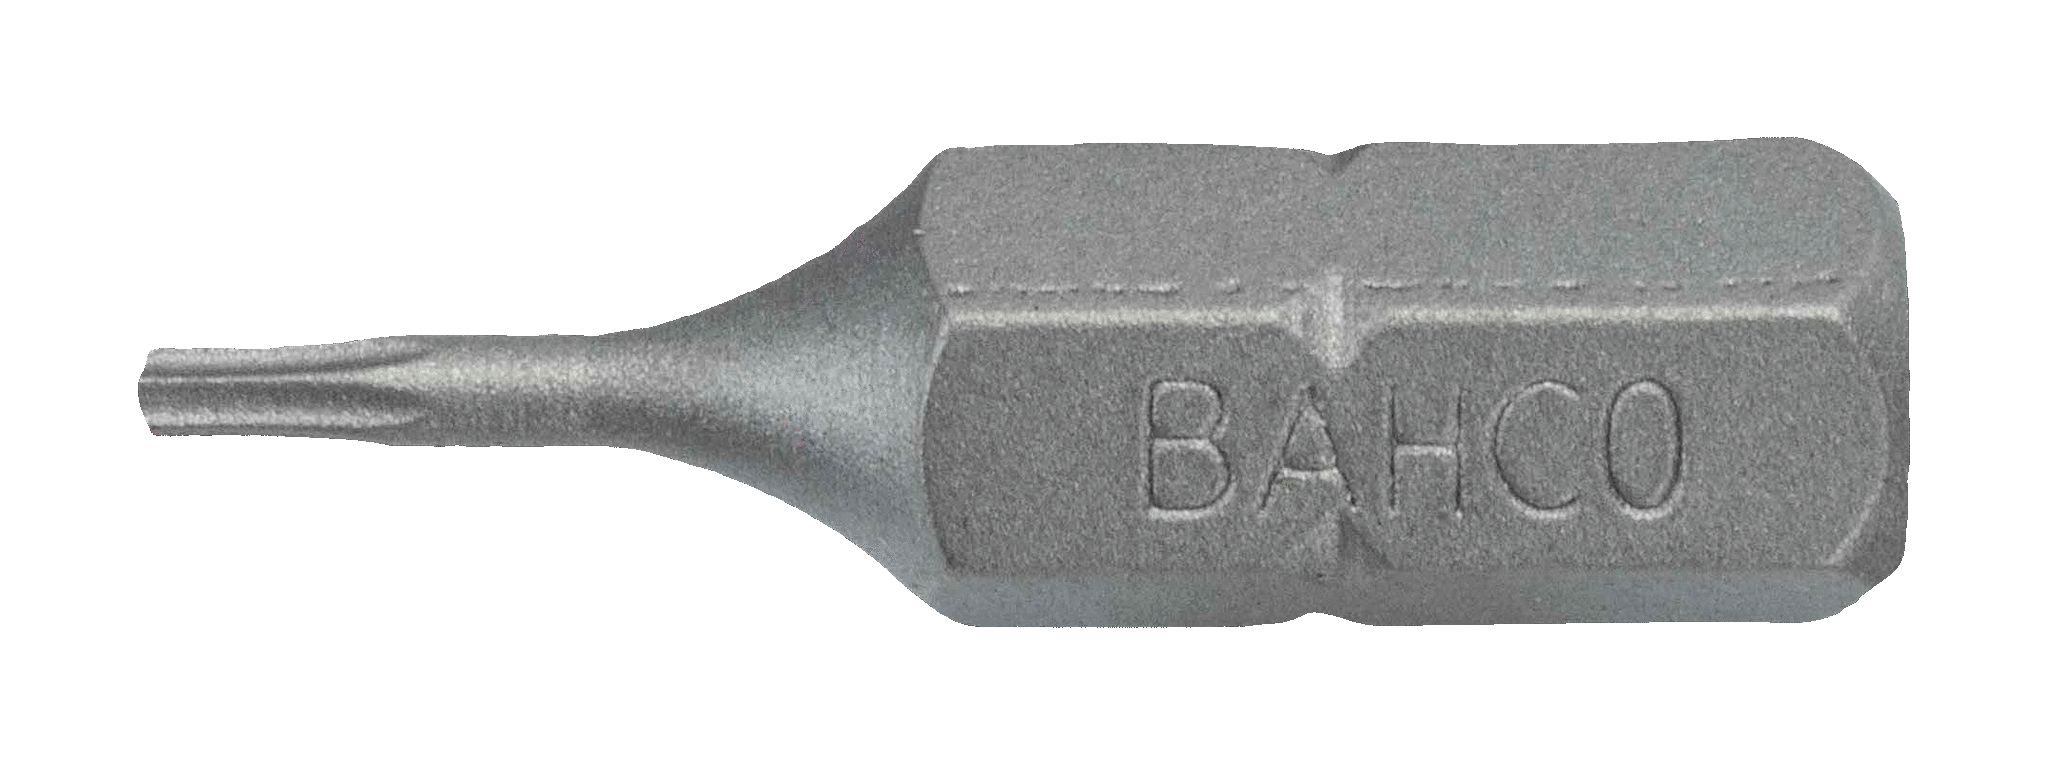 картинка Стандартные биты для отверток Torx®, 25 мм BAHCO 59S/T10 от магазина "Элит-инструмент"